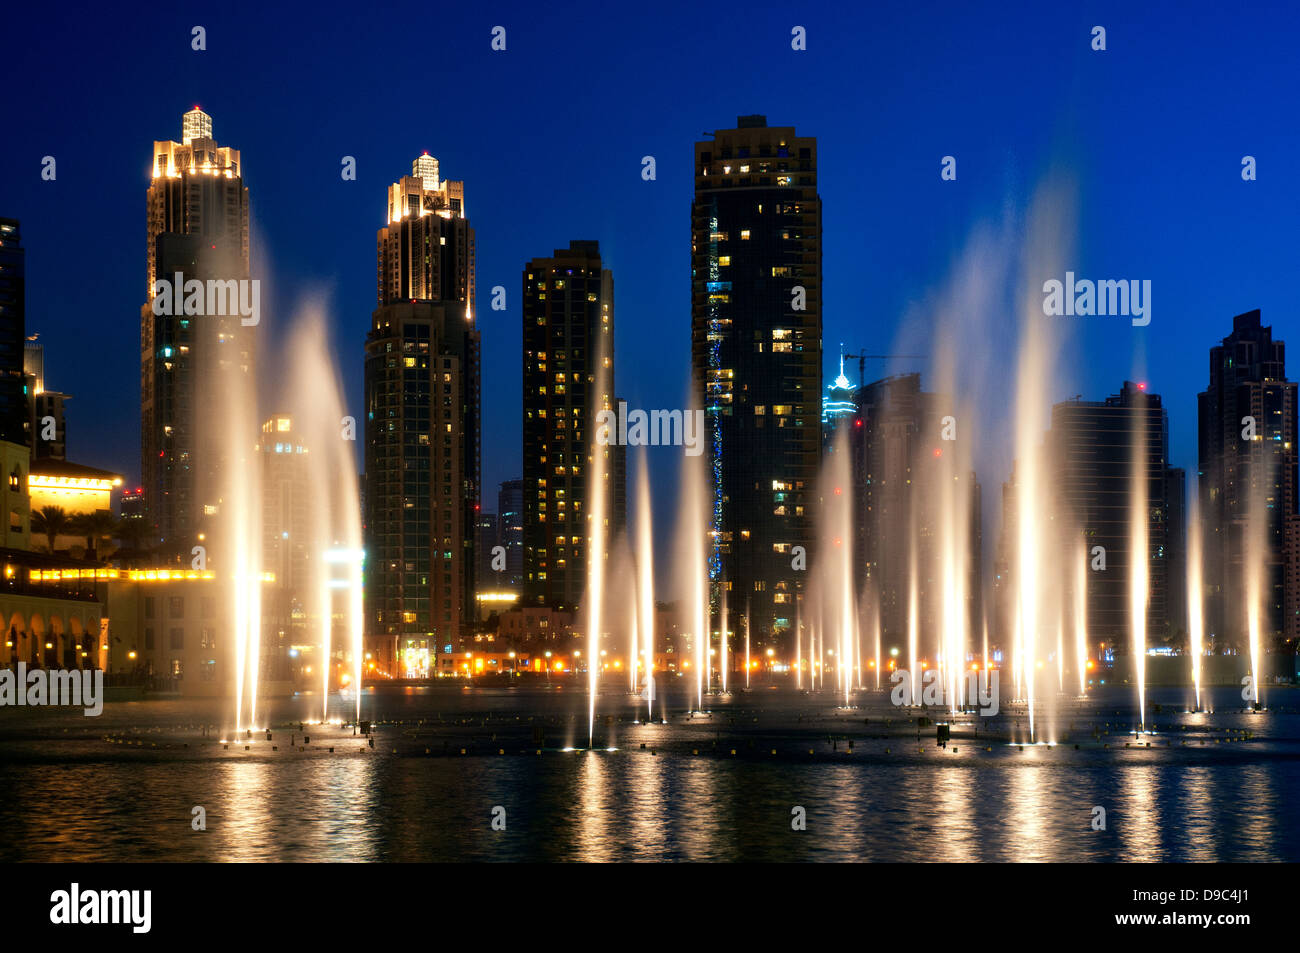 The Dubai Fountain, Dubai, United Arab Emirates Stock Photo